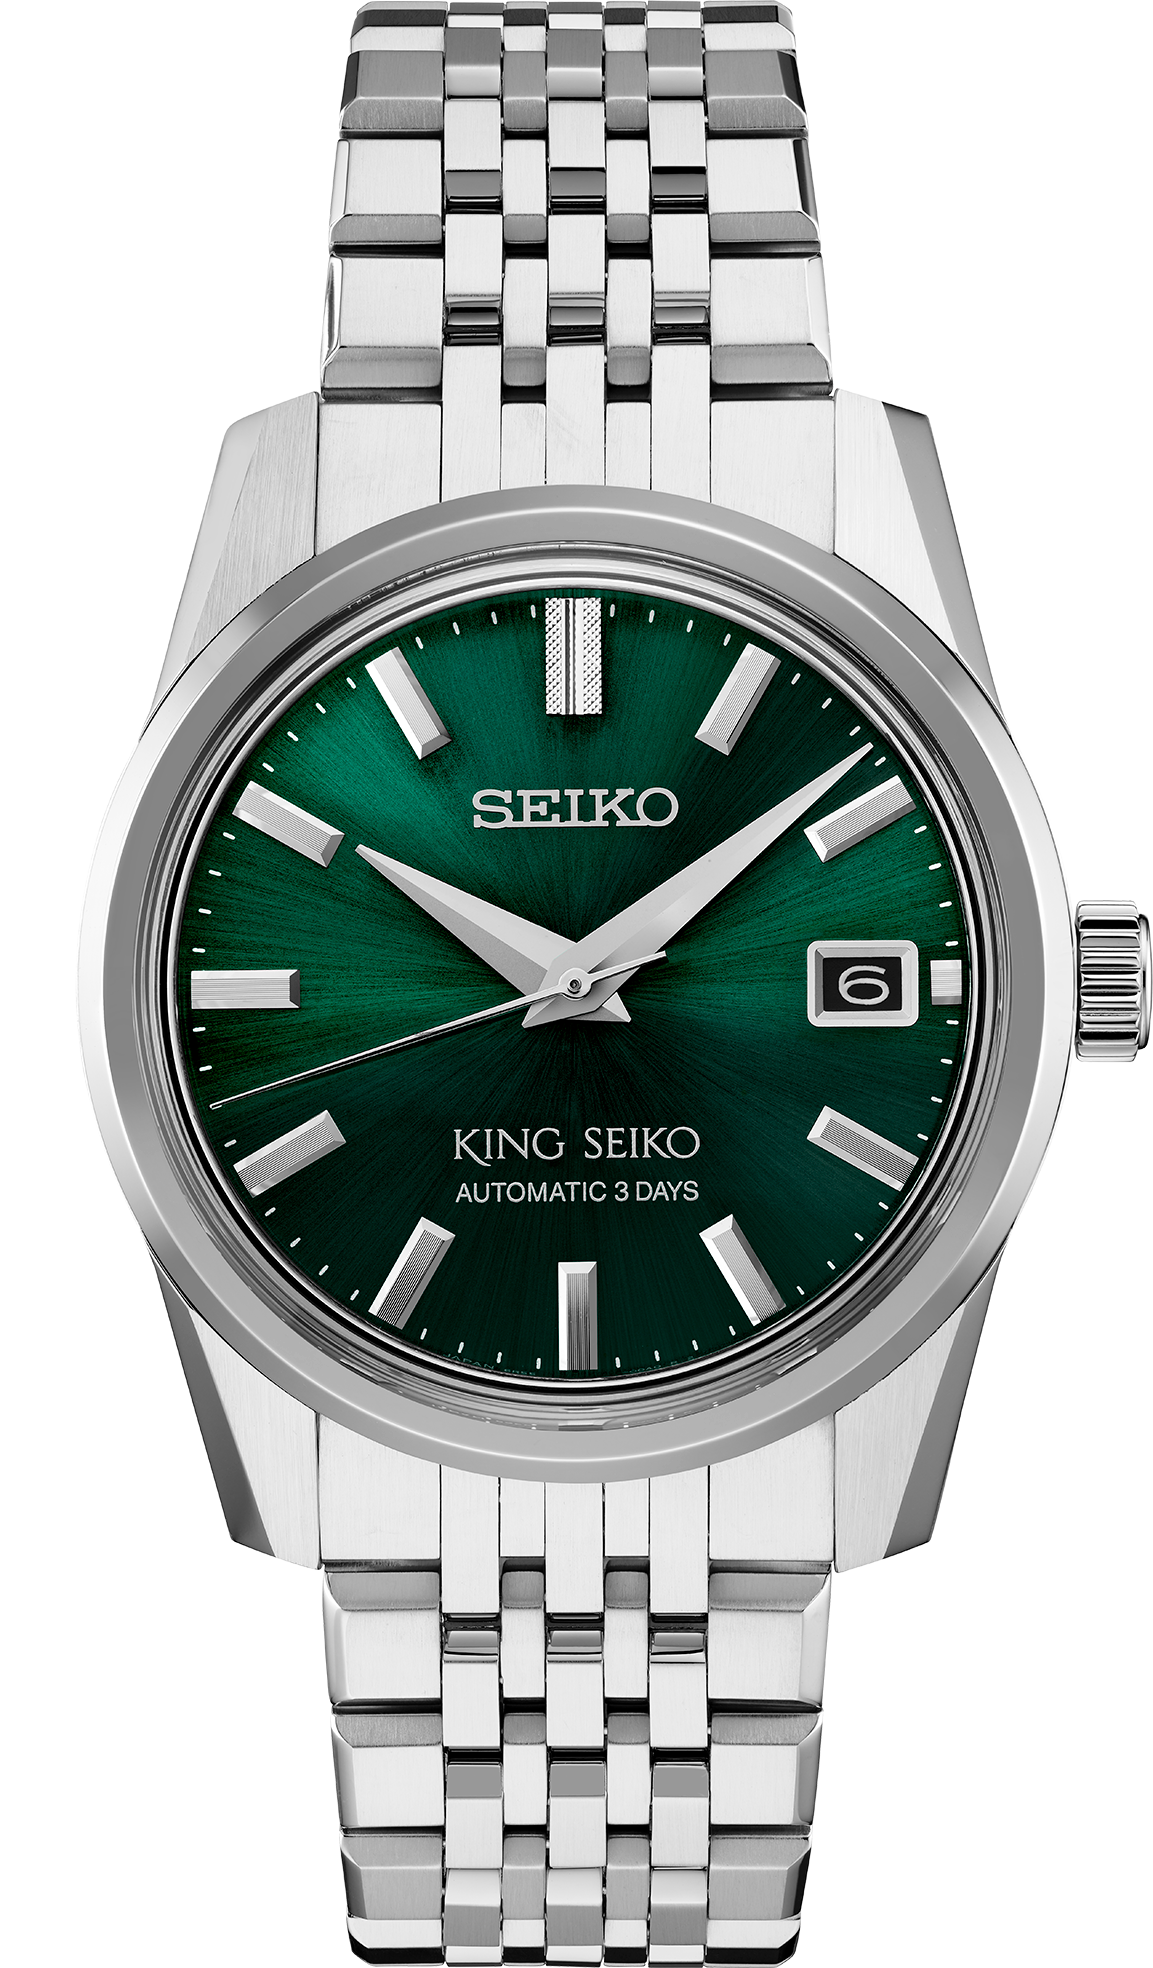 SPB373 King Seiko